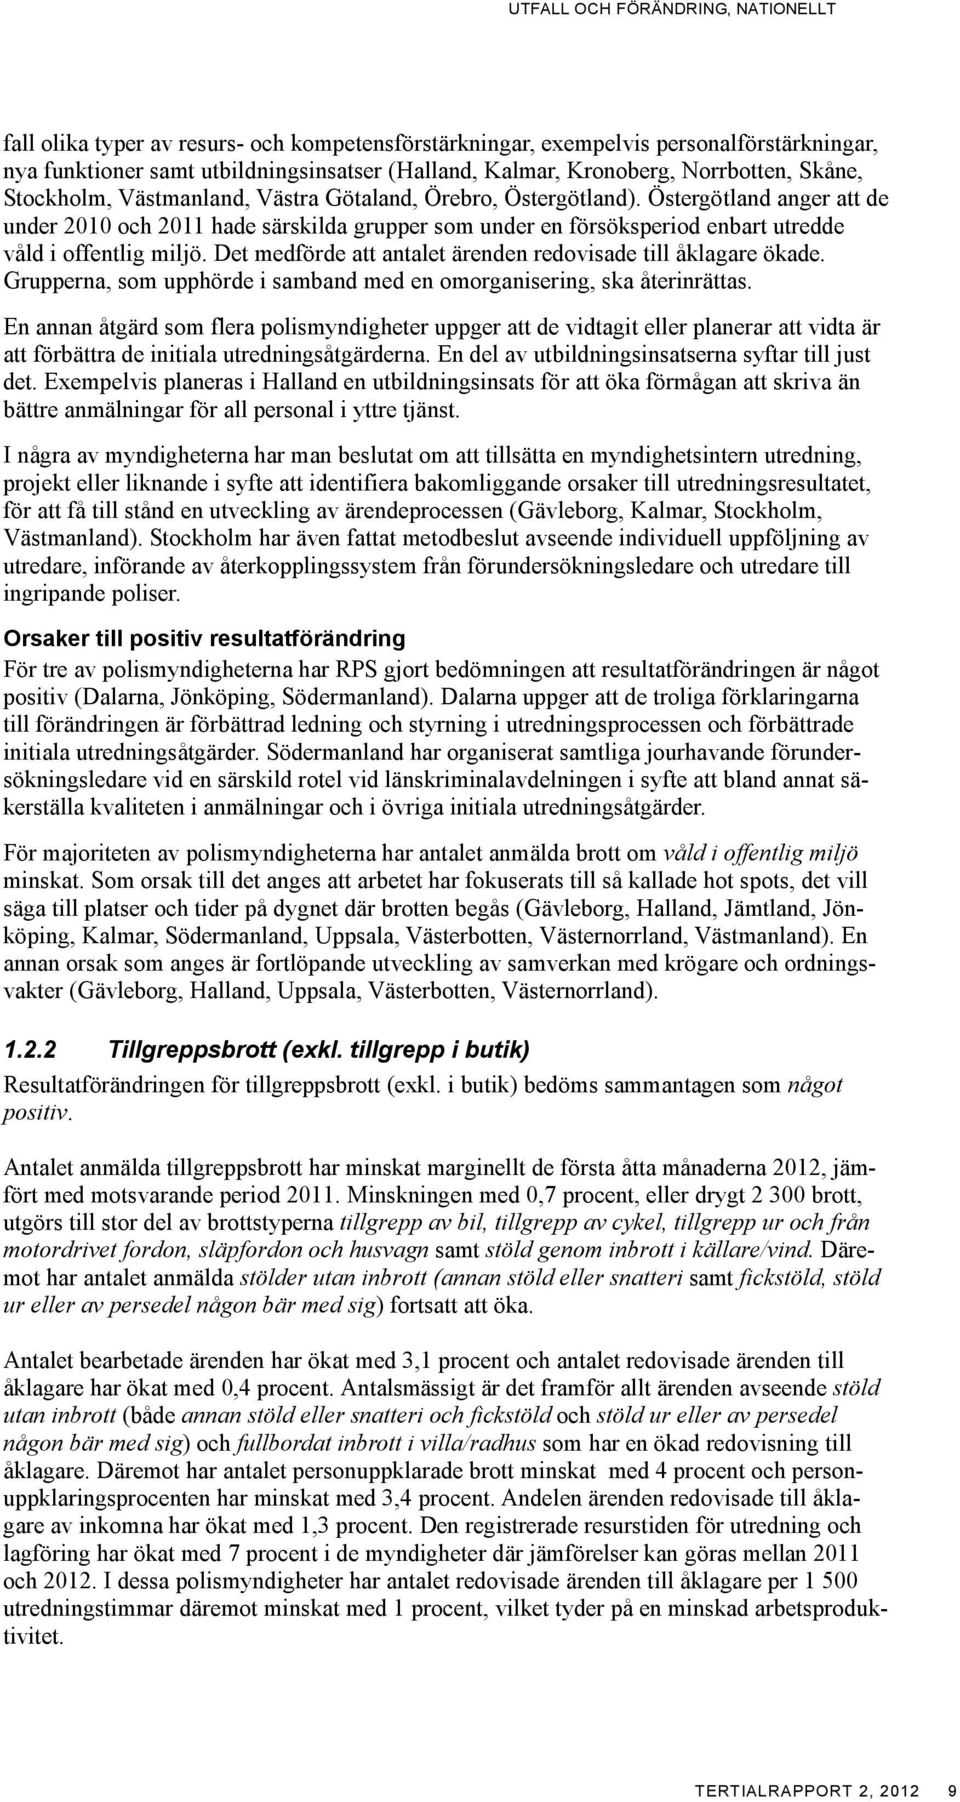 Östergötland anger att de under 2010 och 2011 hade särskilda grupper som under en försöksperiod enbart utredde våld i offentlig miljö. Det medförde att antalet ärenden redovisade till åklagare ökade.